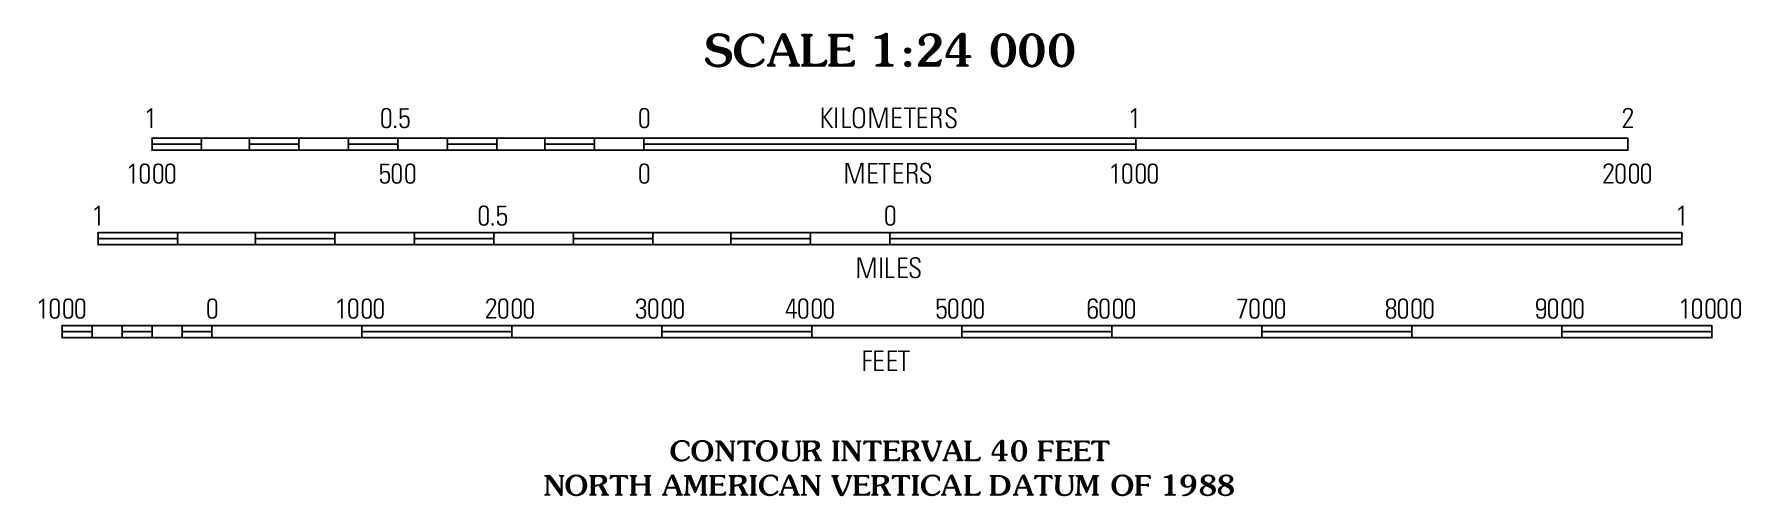 Graphic Scale